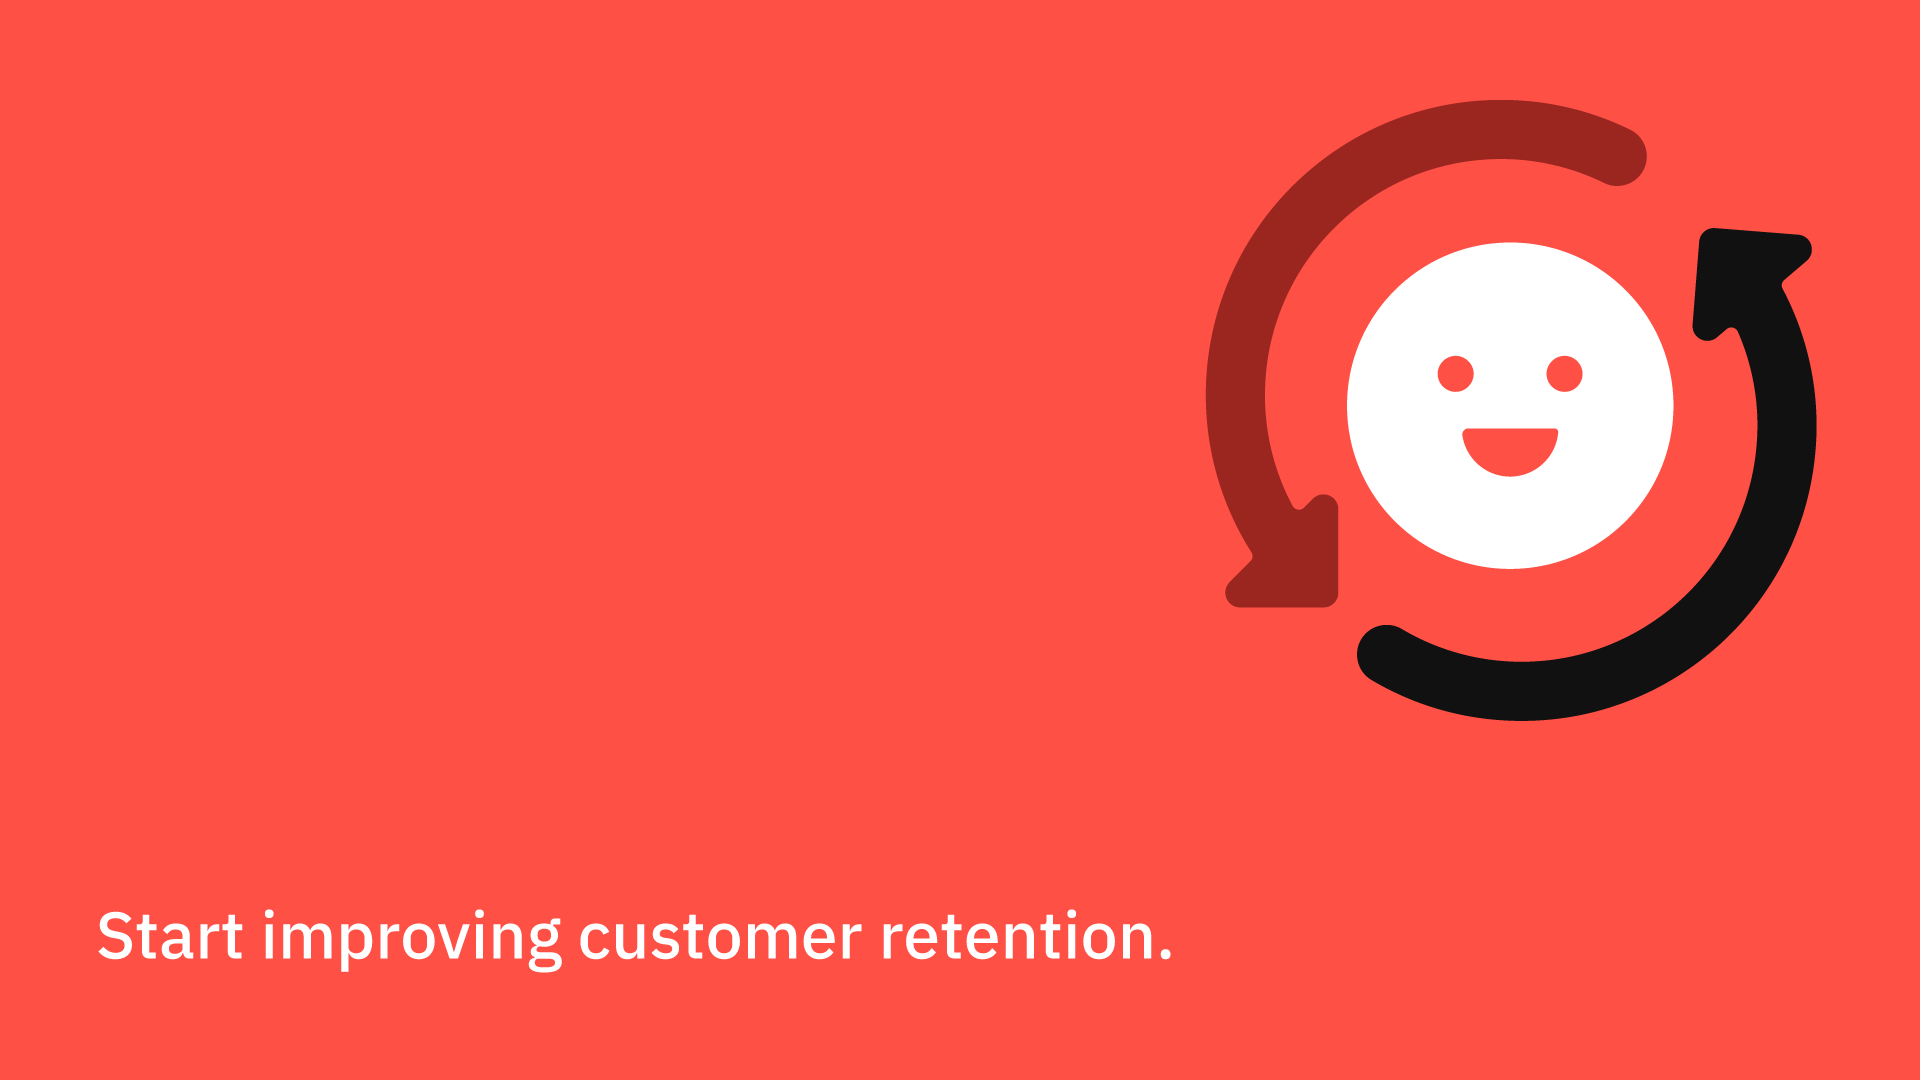 Start improving customer retention.